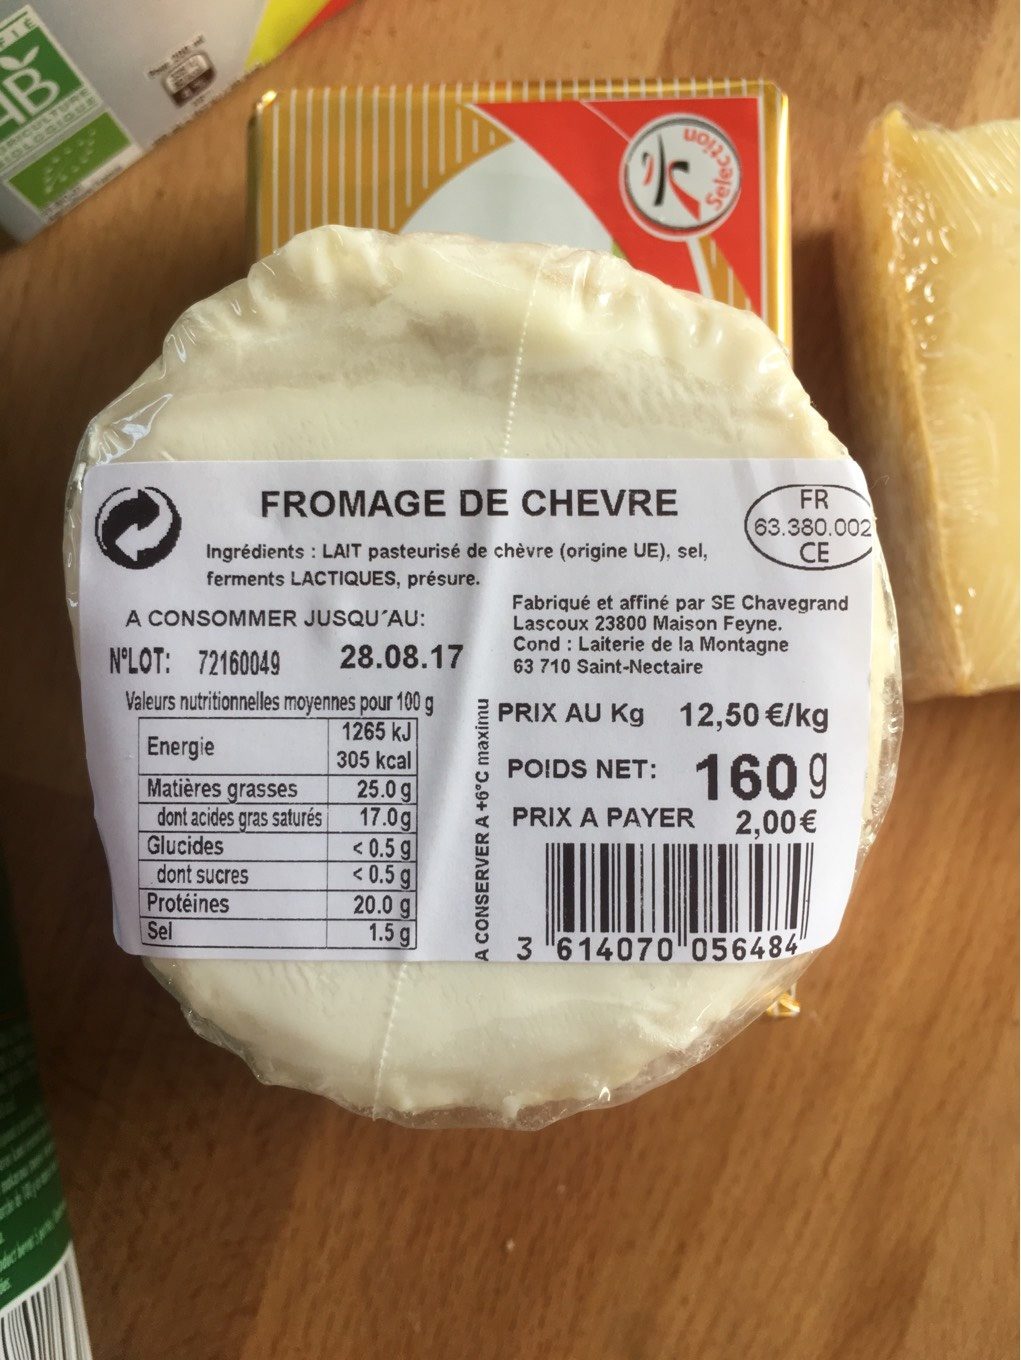 Fromage de chevre - Product - fr